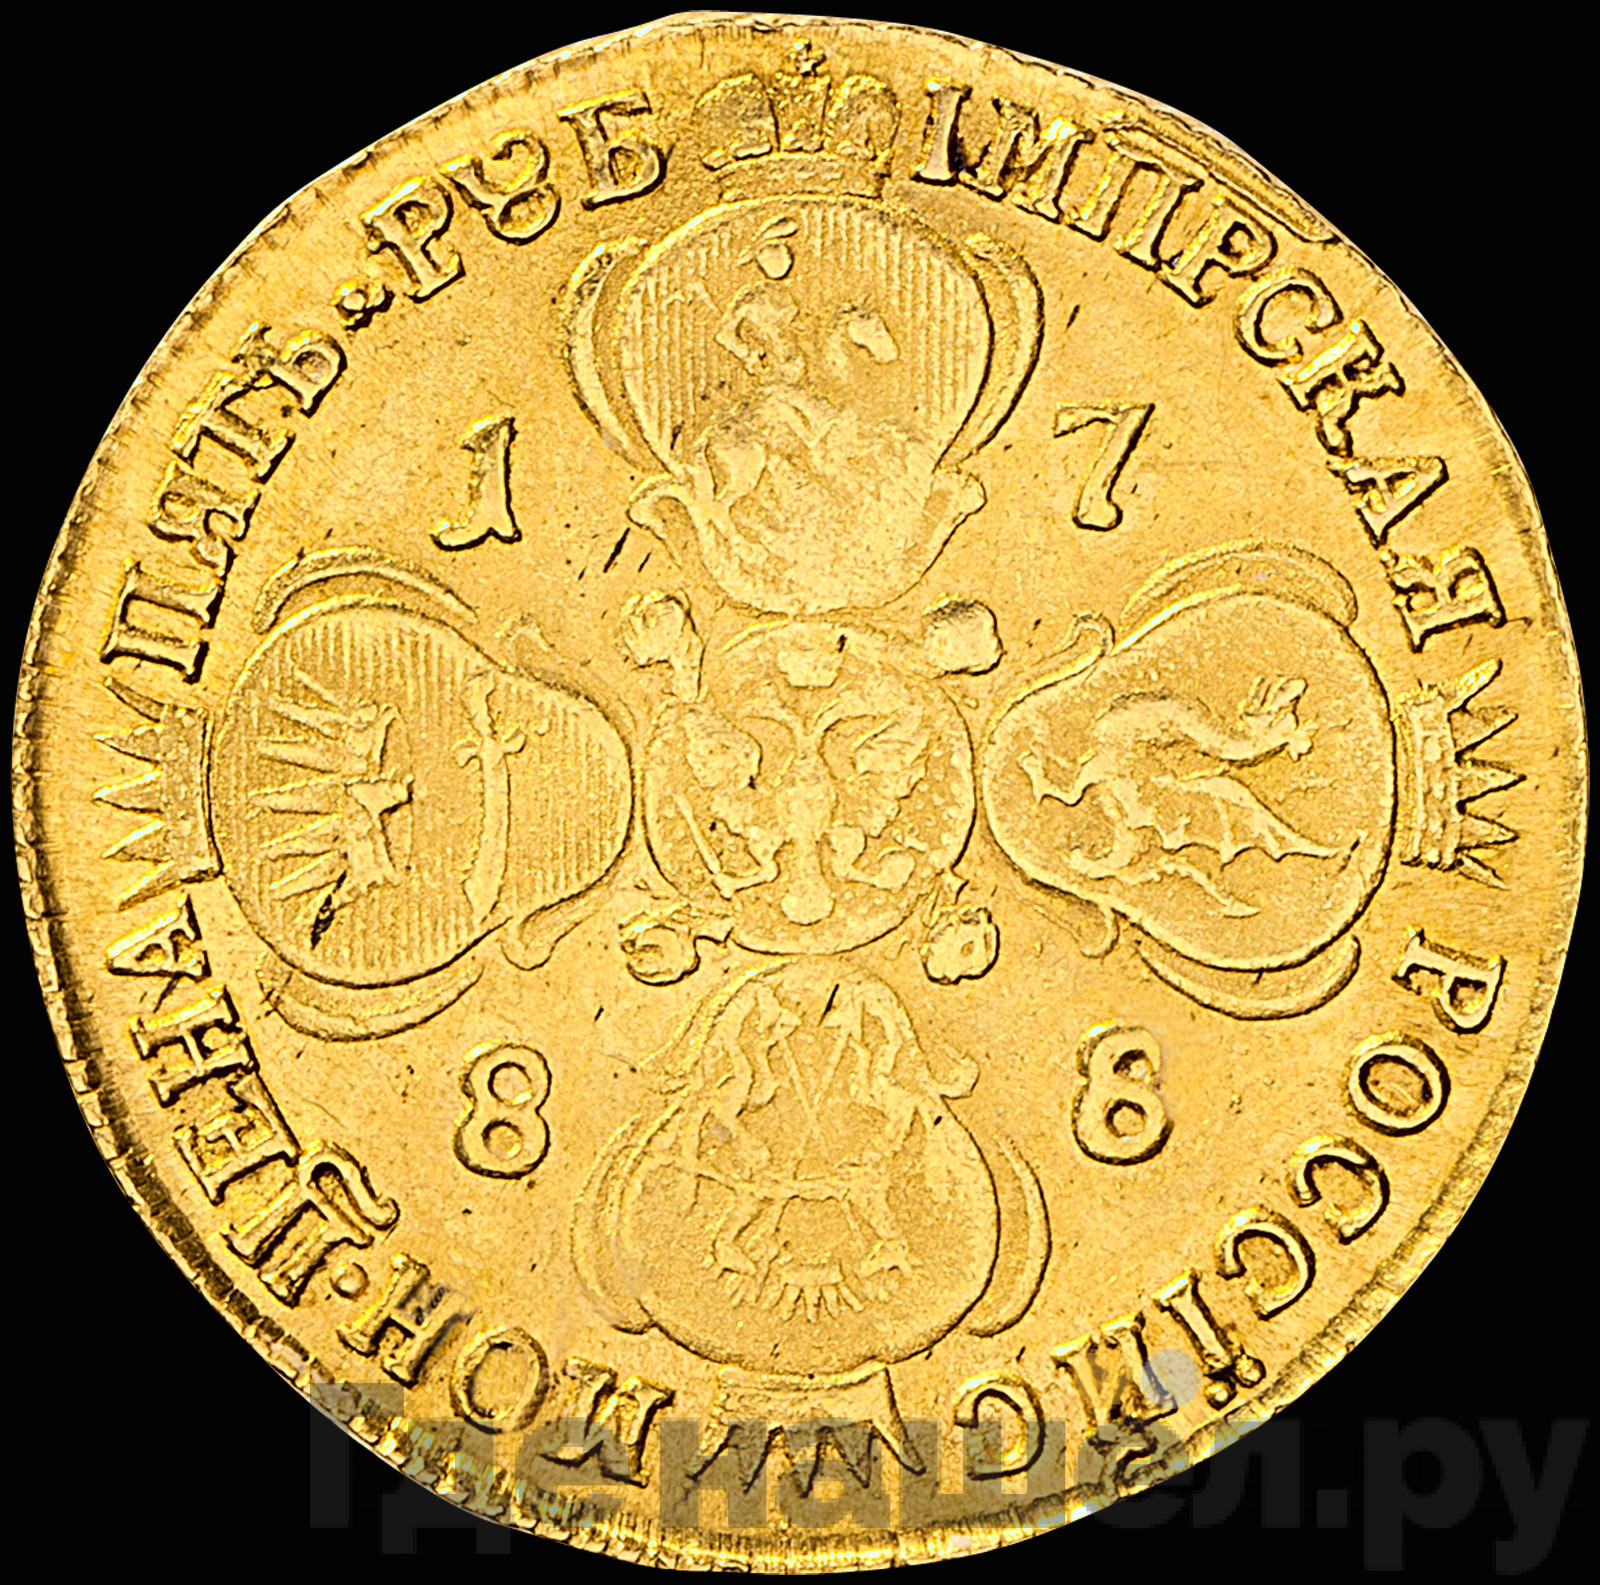 5 рублей 1788 года